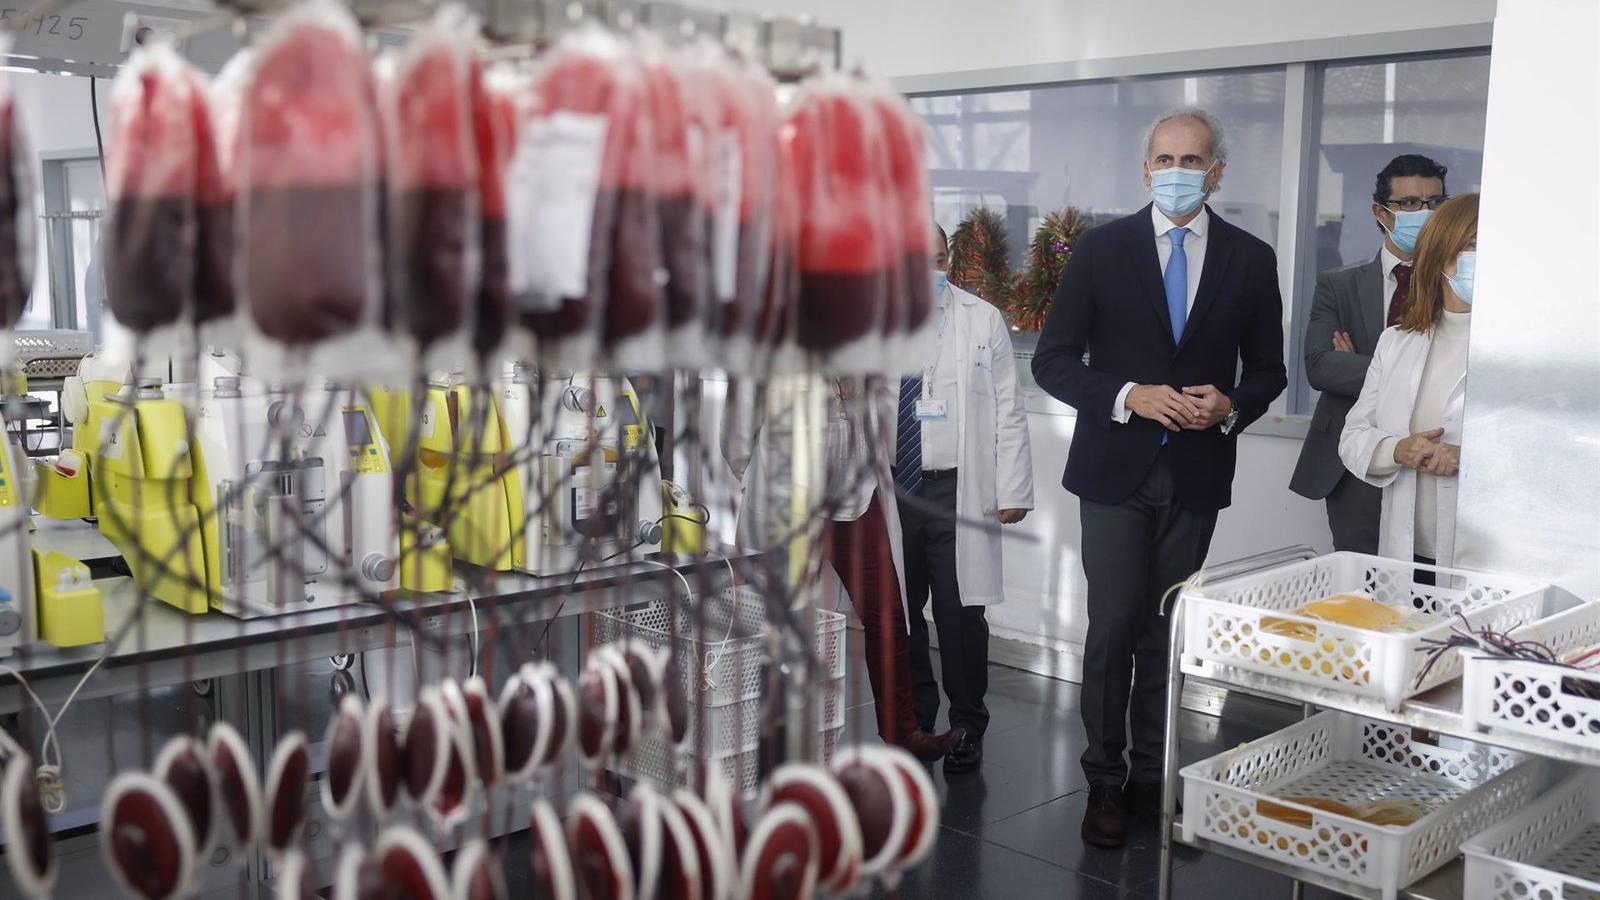 El Centro de Transfusión promueve la donación de sangre con visitas guiadas y talleres de reanimación